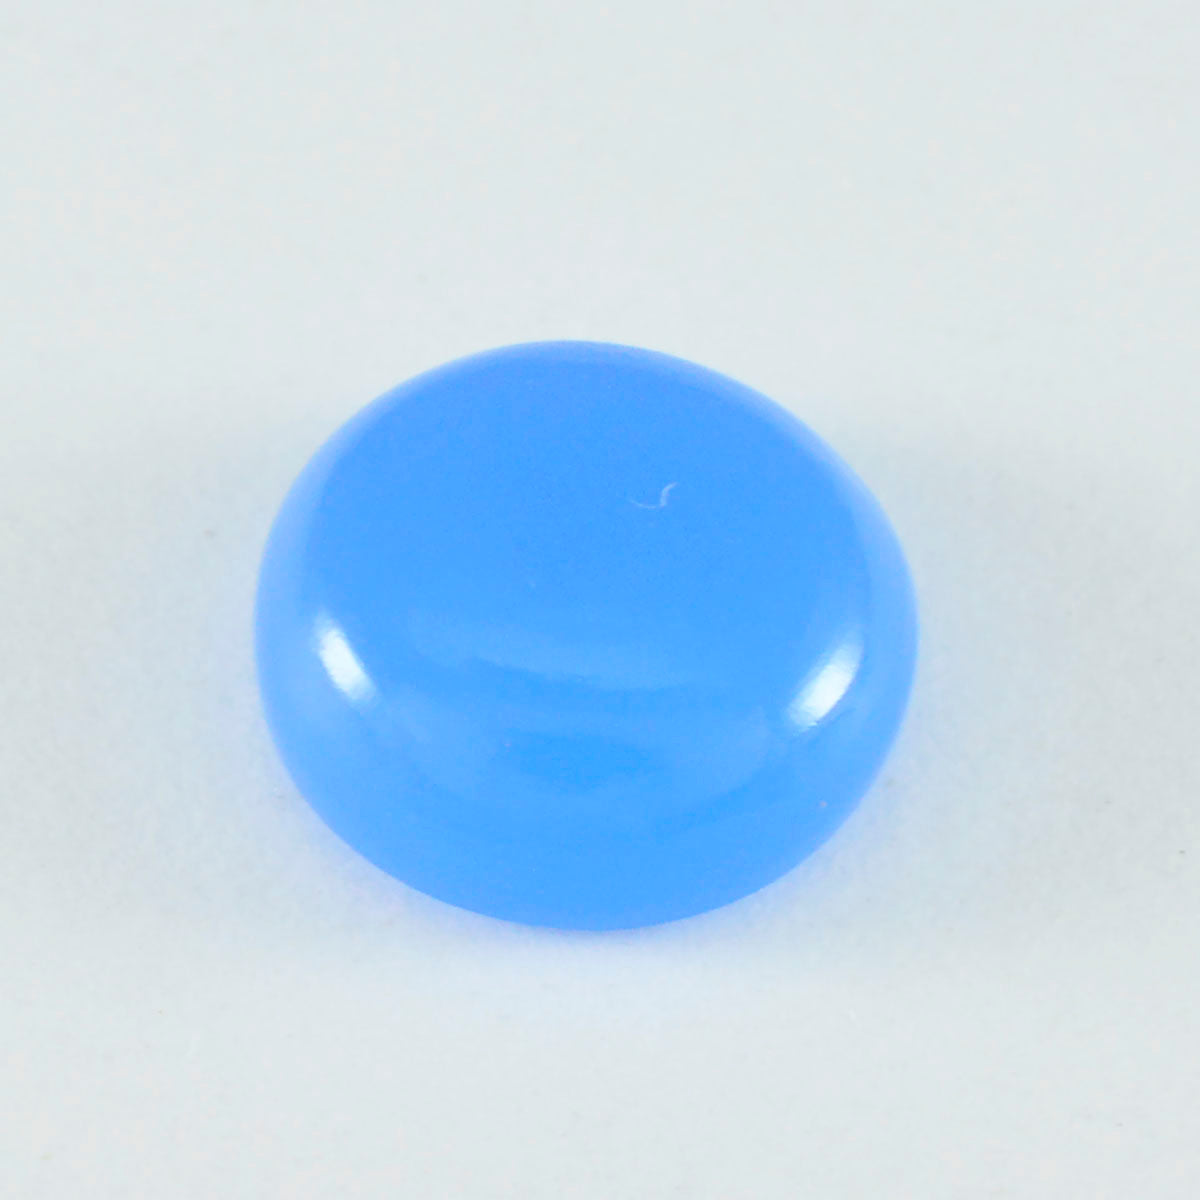 Riyogems 1 pieza cabujón de Calcedonia azul 4x4mm forma cuadrada piedra suelta de buena calidad